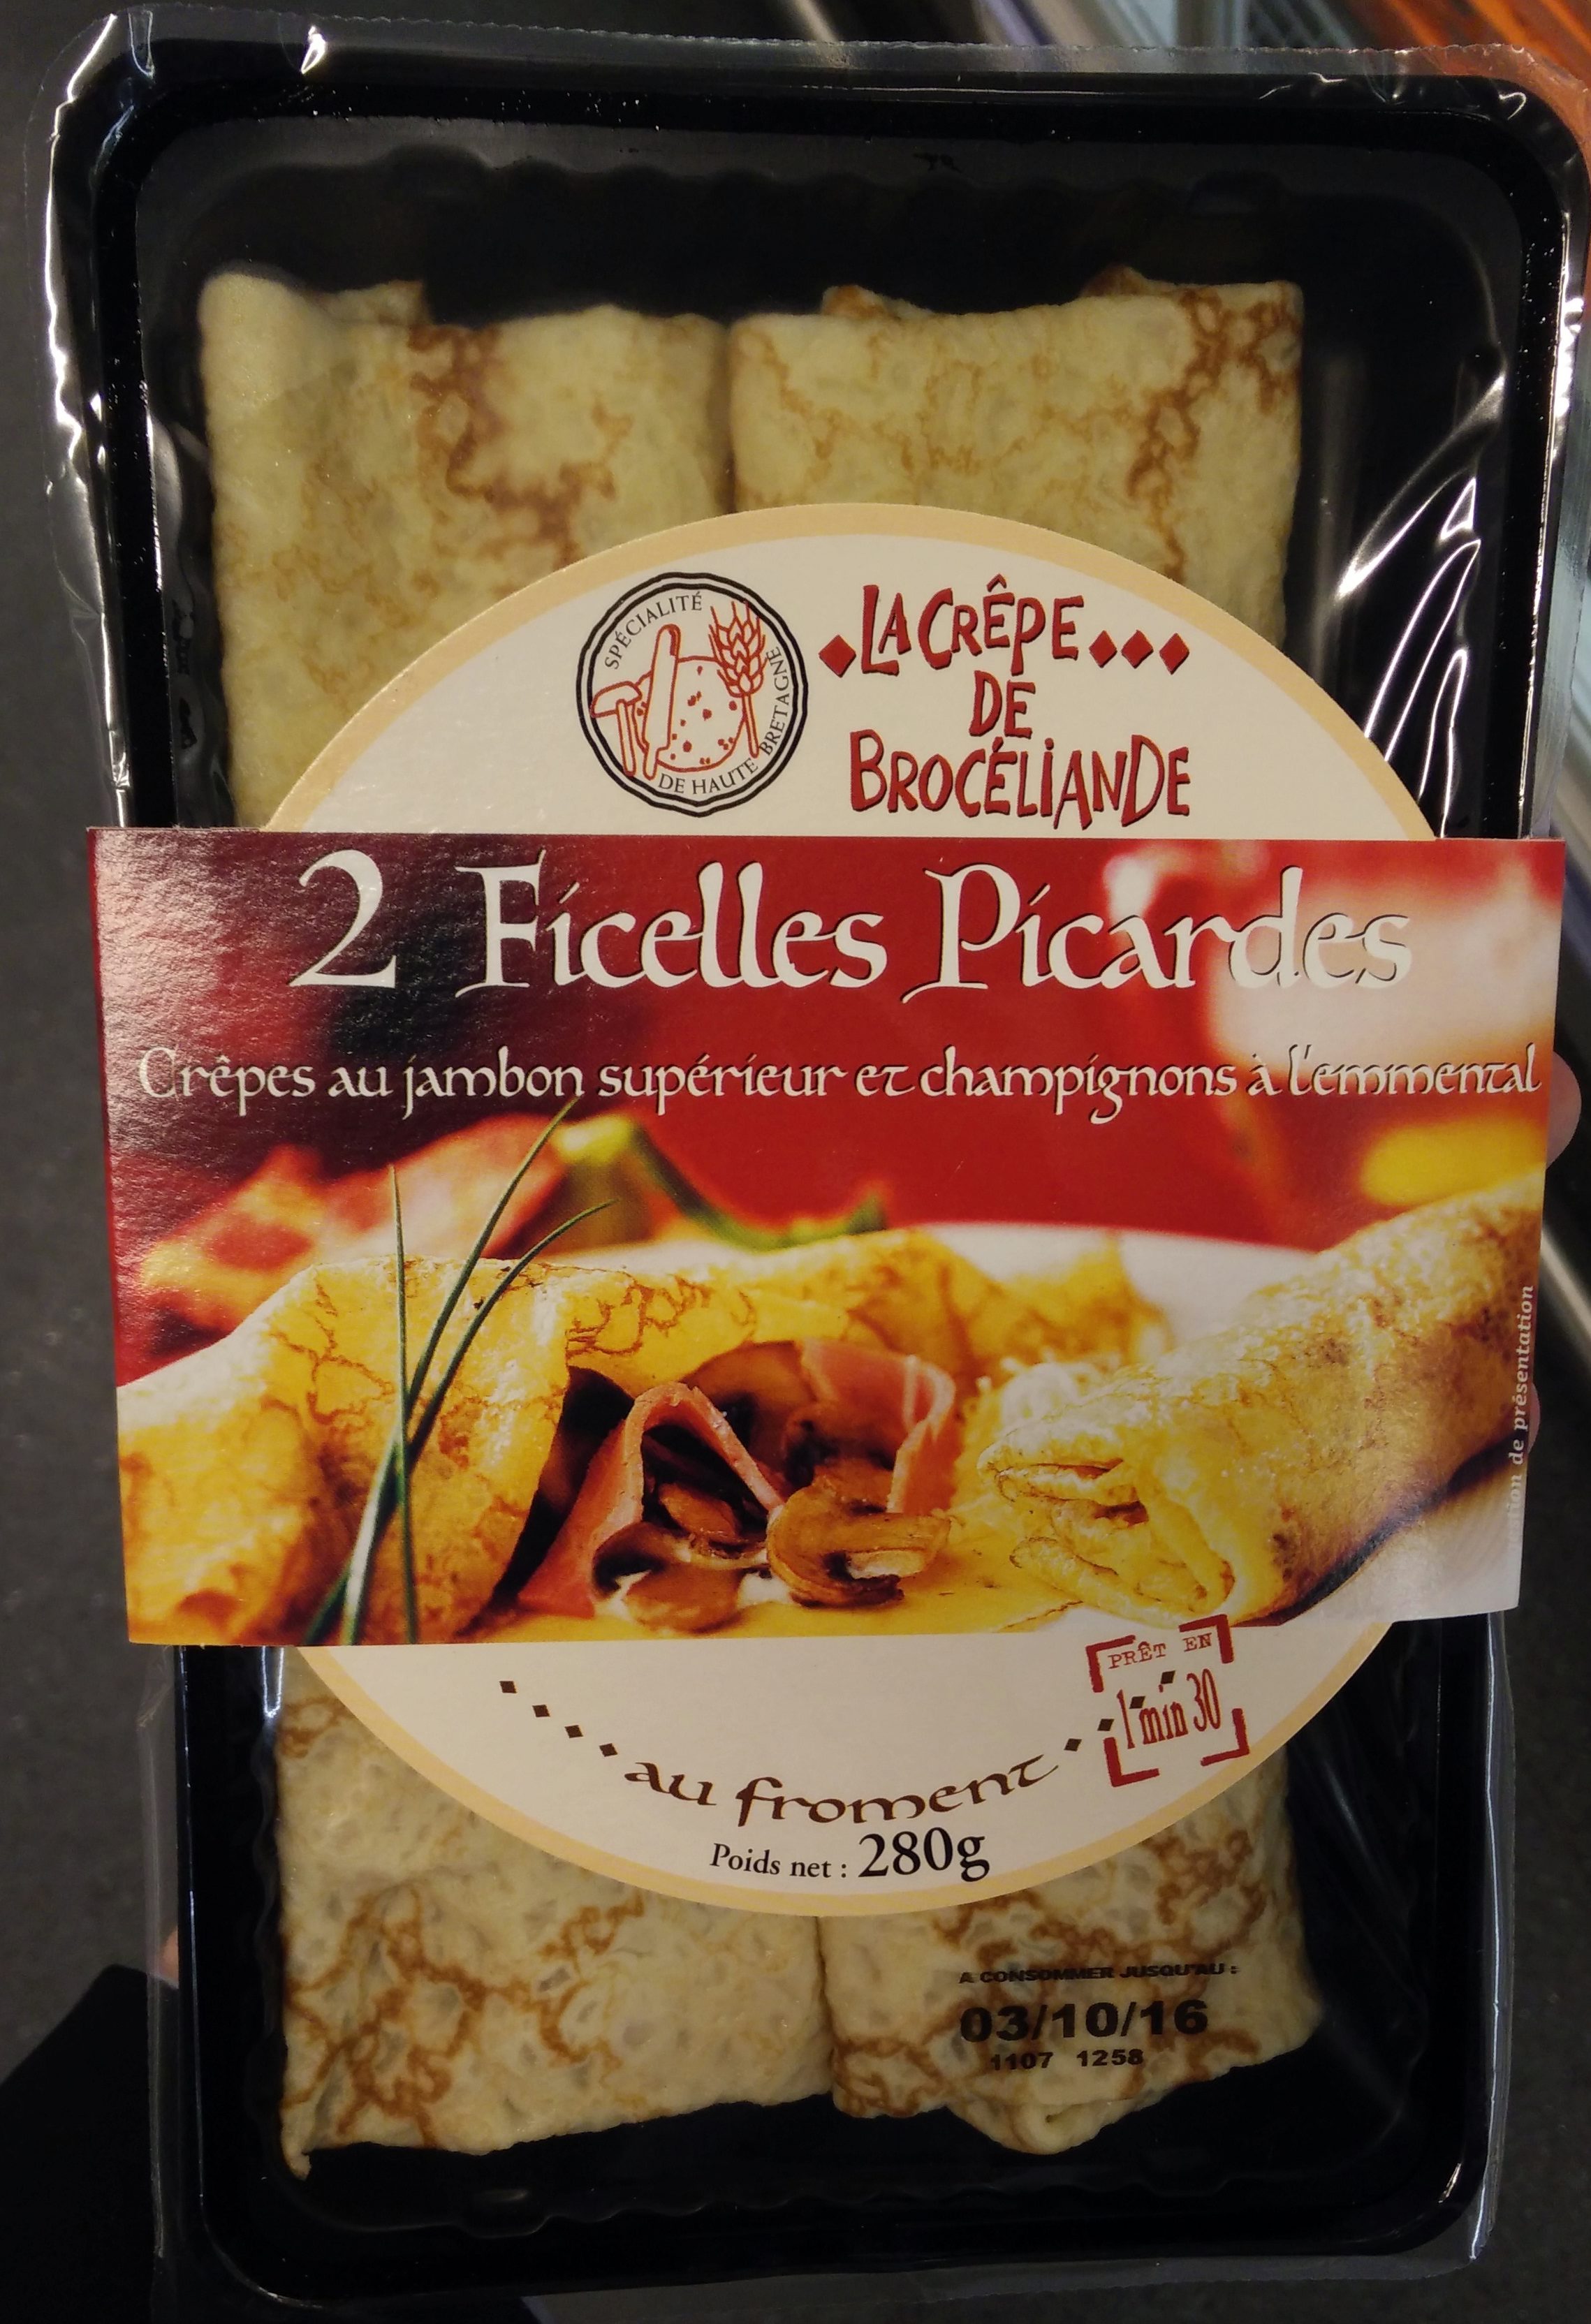 2 Ficelles Picardes - Crêpes au jambon supérieur et champignons à l'emmental - Produit - fr